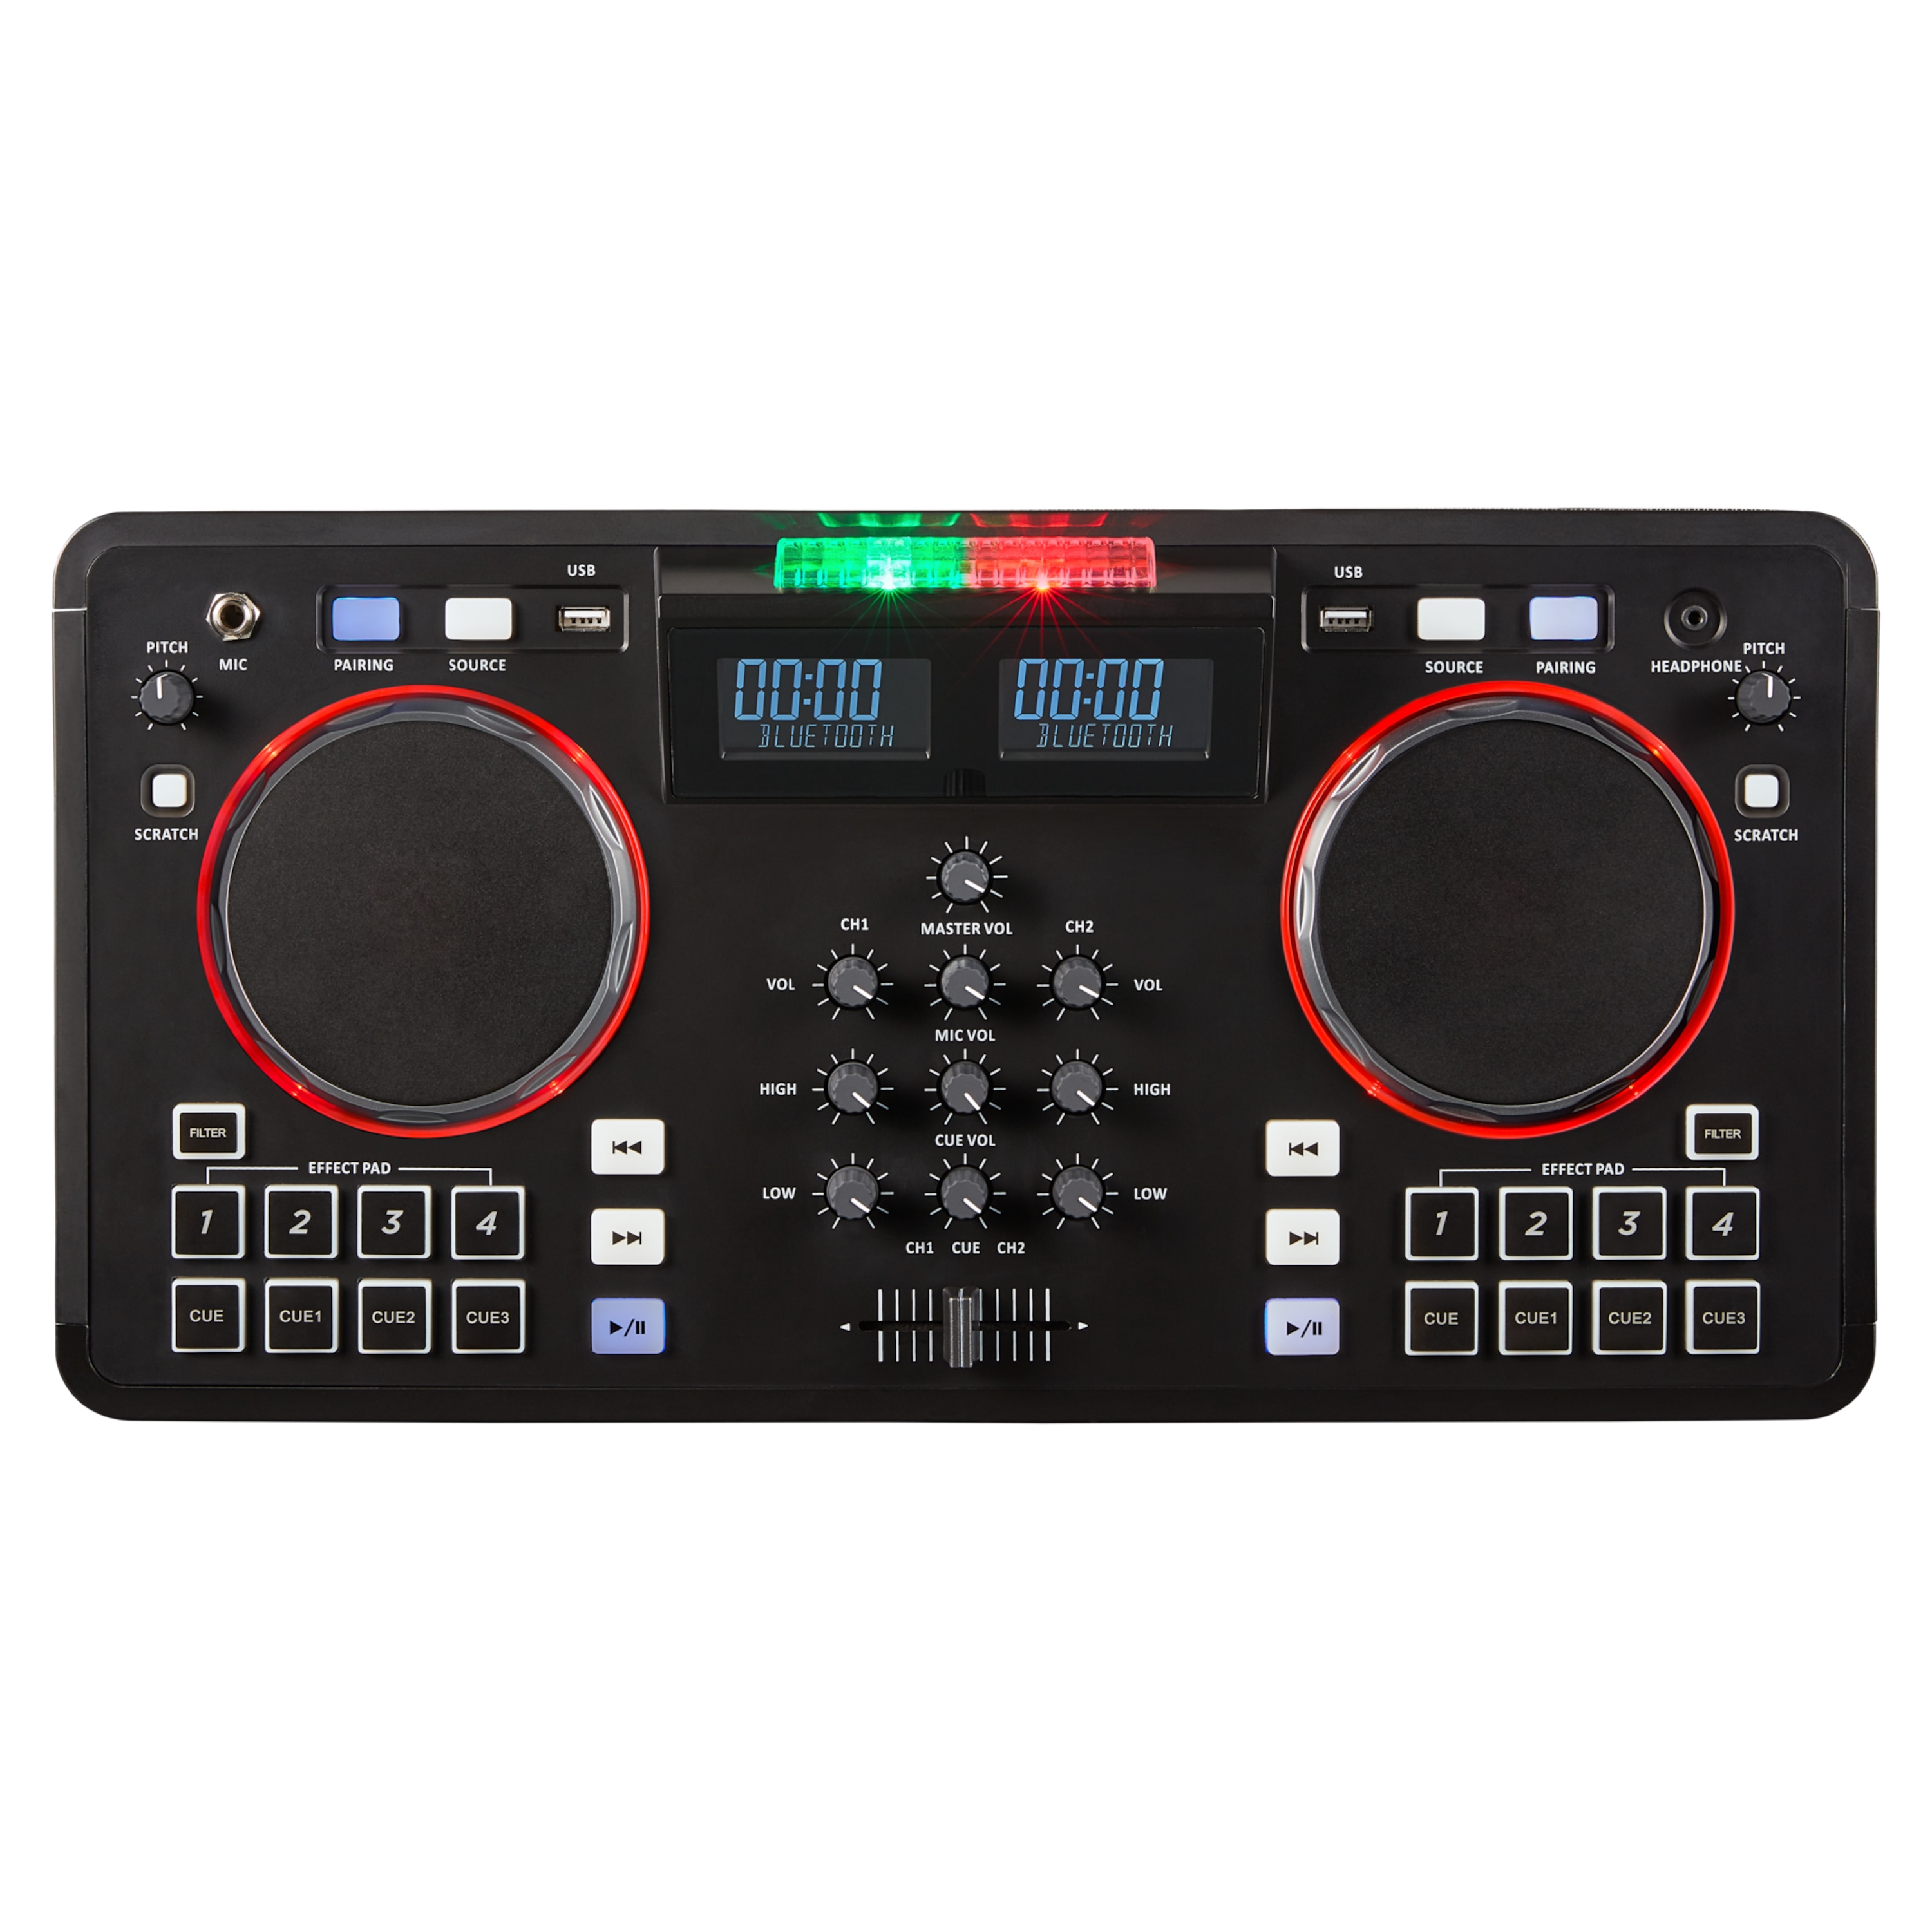 MEDION® LIFE® X61420 Partylautsprecher mit DJ-Controller, 2 LC-Displays, mit 8 multifunktionellen, beleuchtete Performance-Pads pro Deck, LED-Lichteffekte, einfach zu transportieren, 2 x 20 W RMS